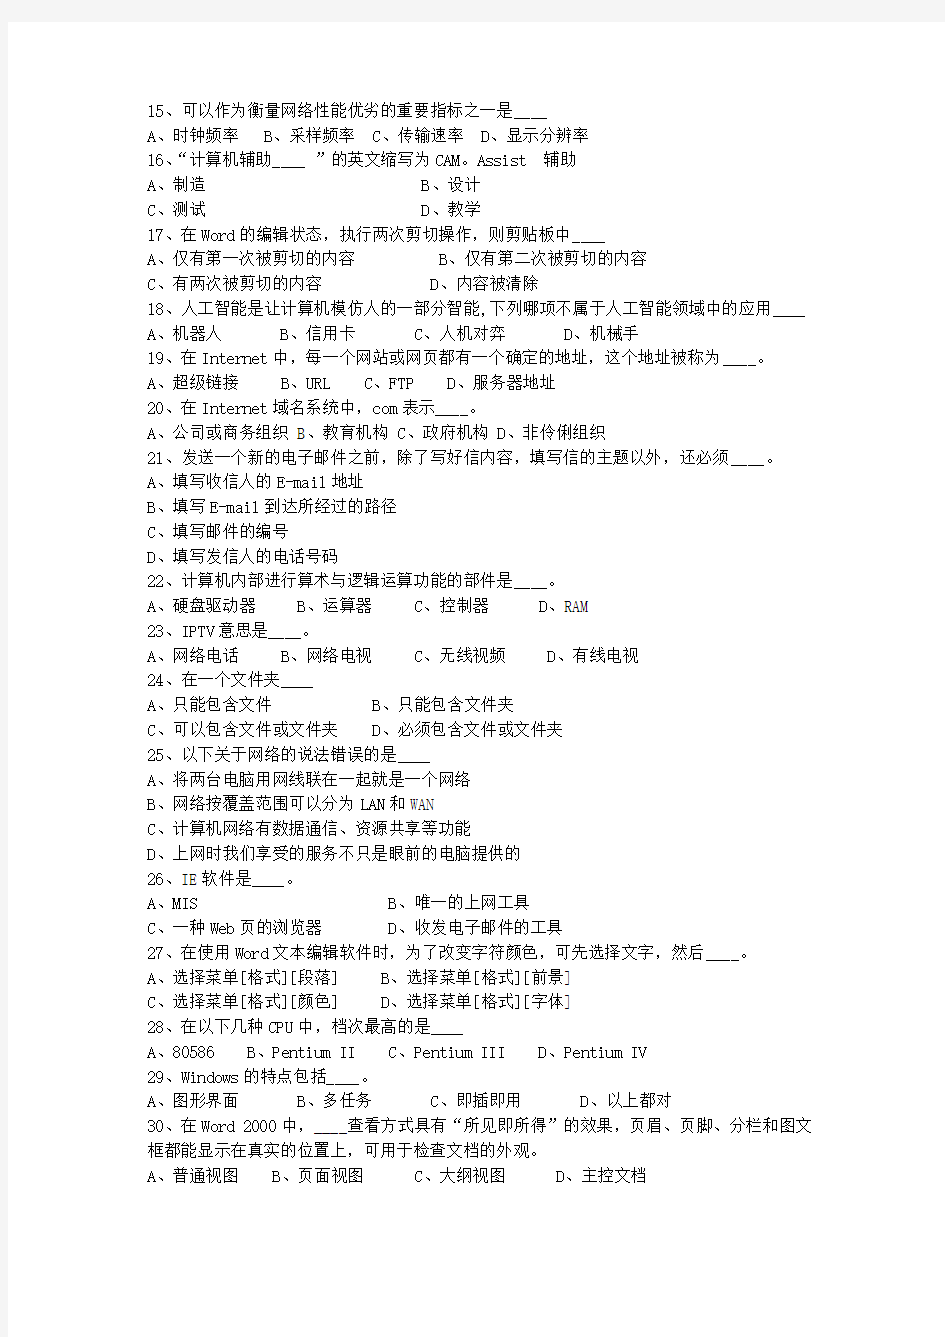 2010广东省公务员考试公共基础知识(必备资料)